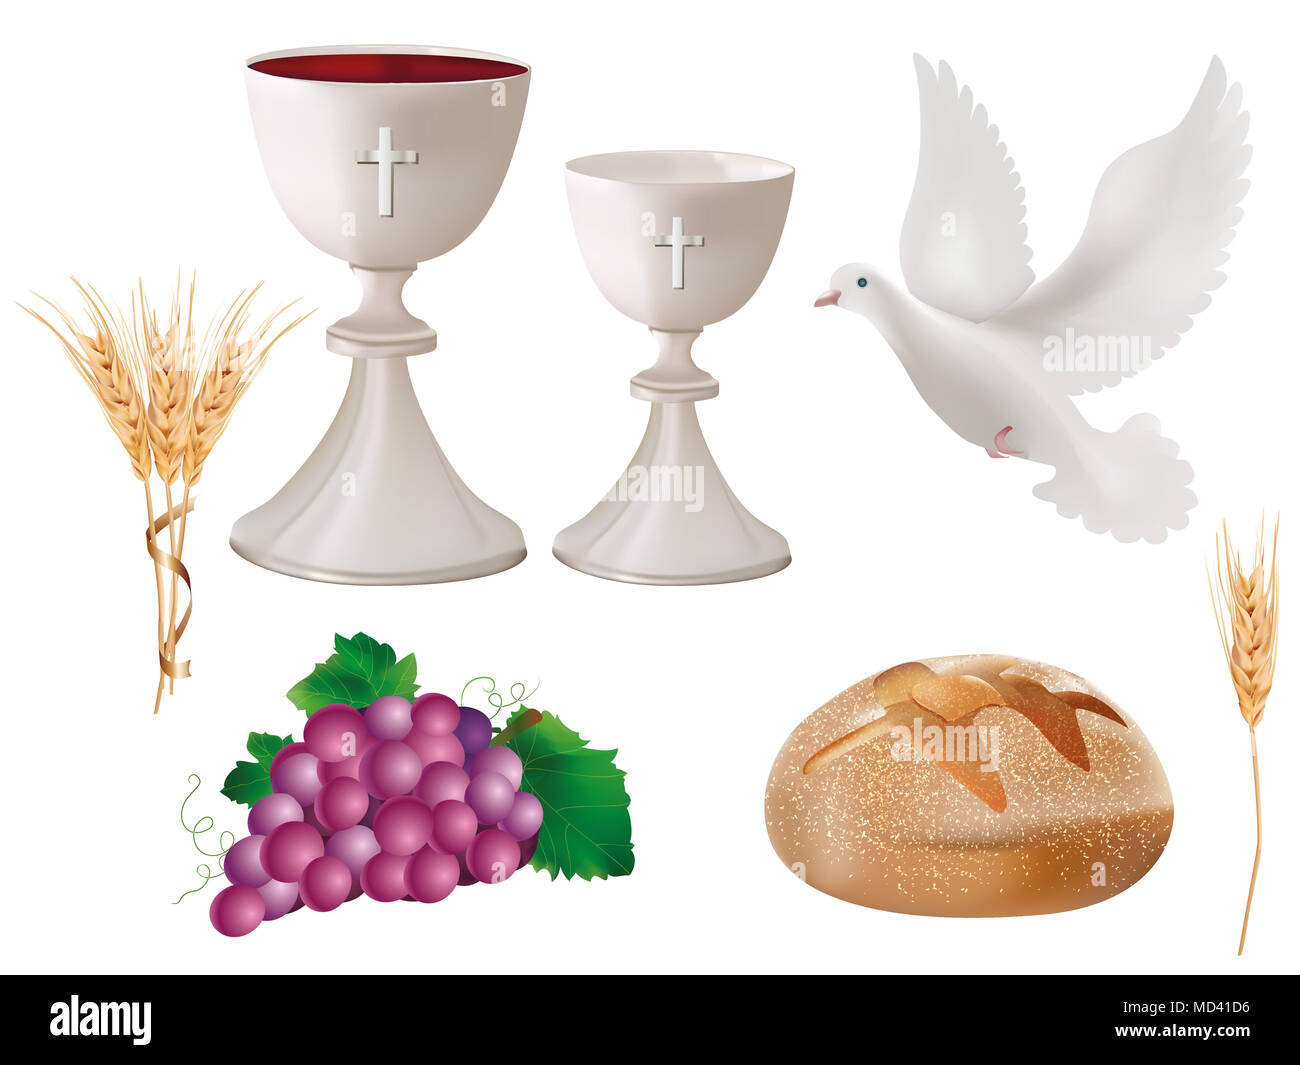 Isolierte christliche Symbole: Weißer Kelch mit Wein, Taube, Trauben, Brot, Weizenohr. Christliche Zeichen. Letzte Abendmahlssymbole.3D-realistische Abbildung Stockfoto